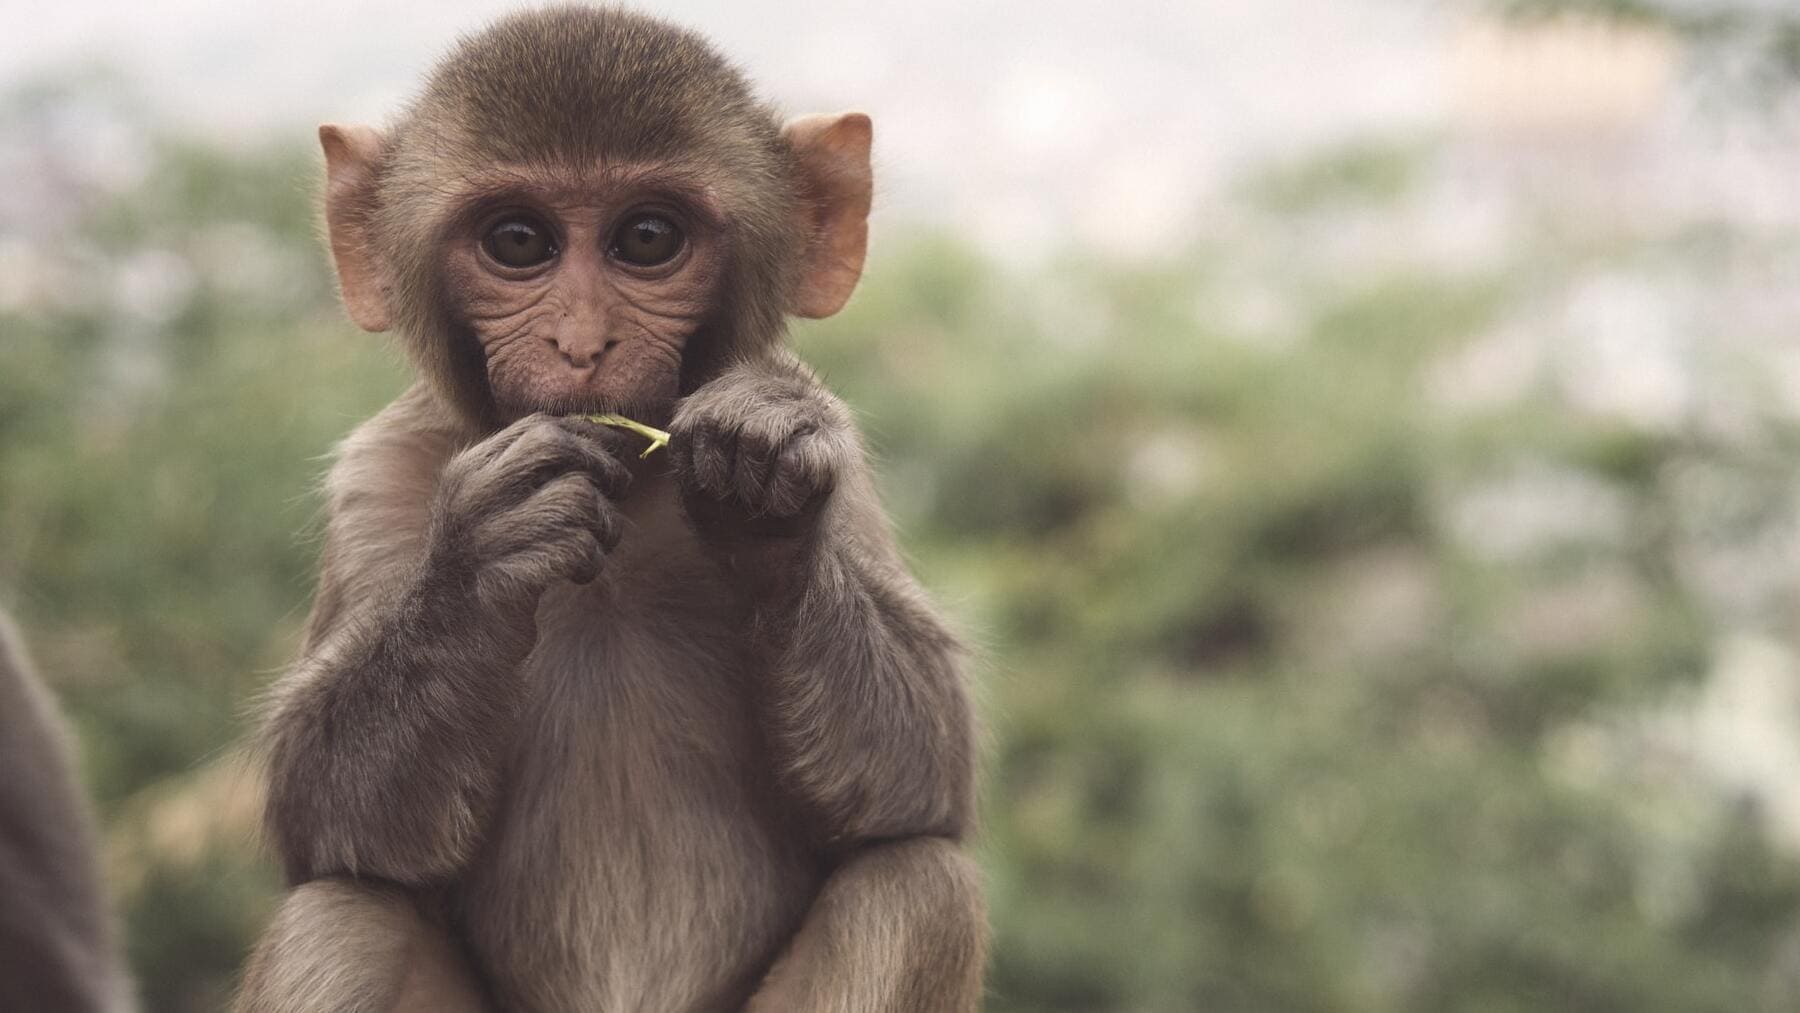 Las mejores frases sobre los monos